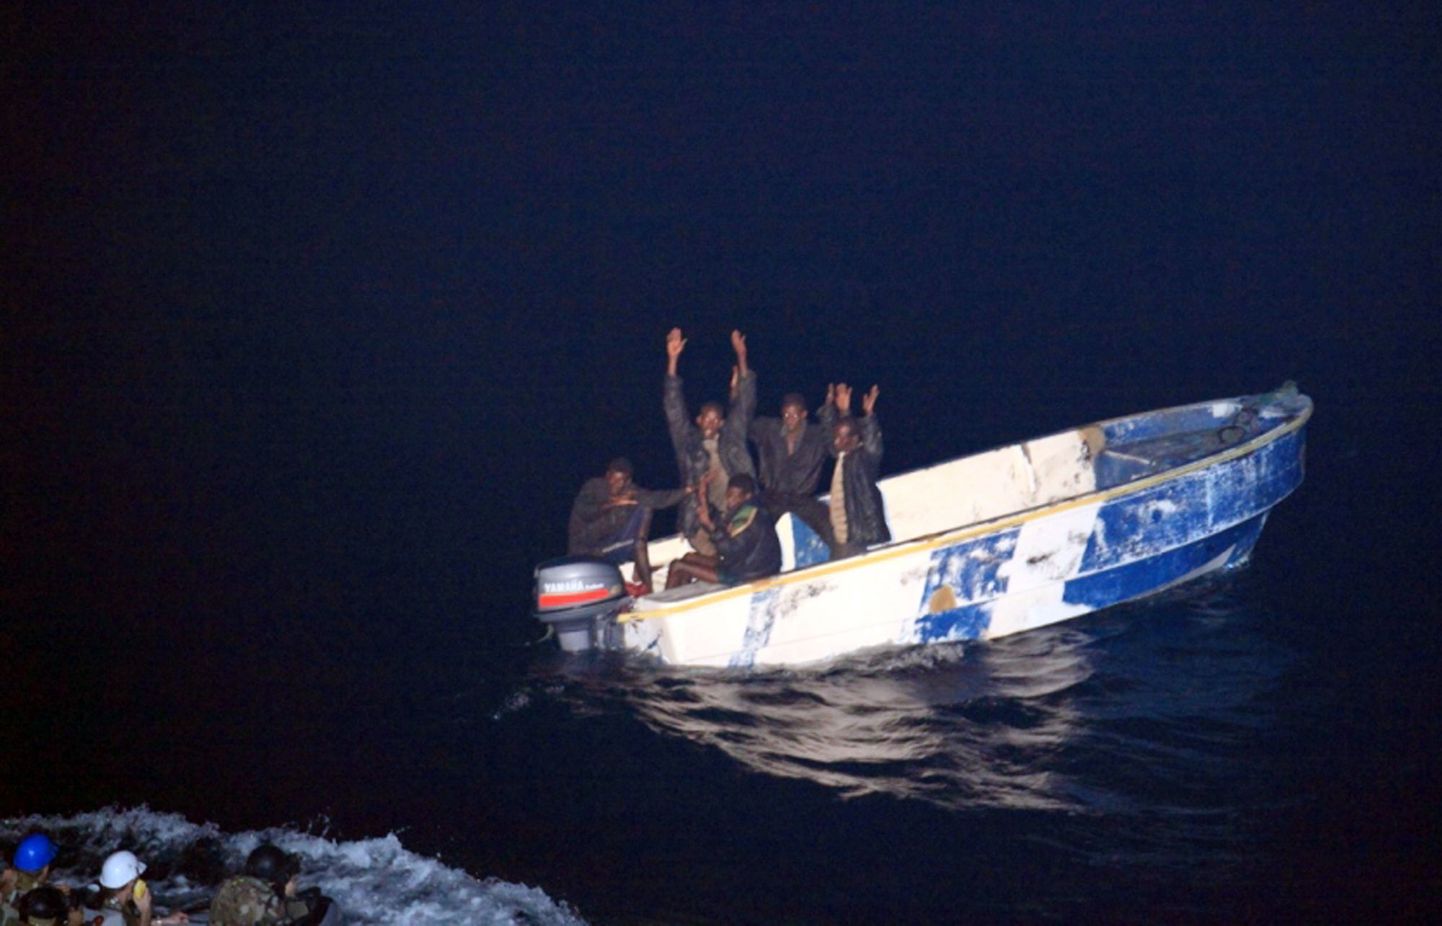 Pilt on illustratiivne: Somaalia piraatide tabamine.